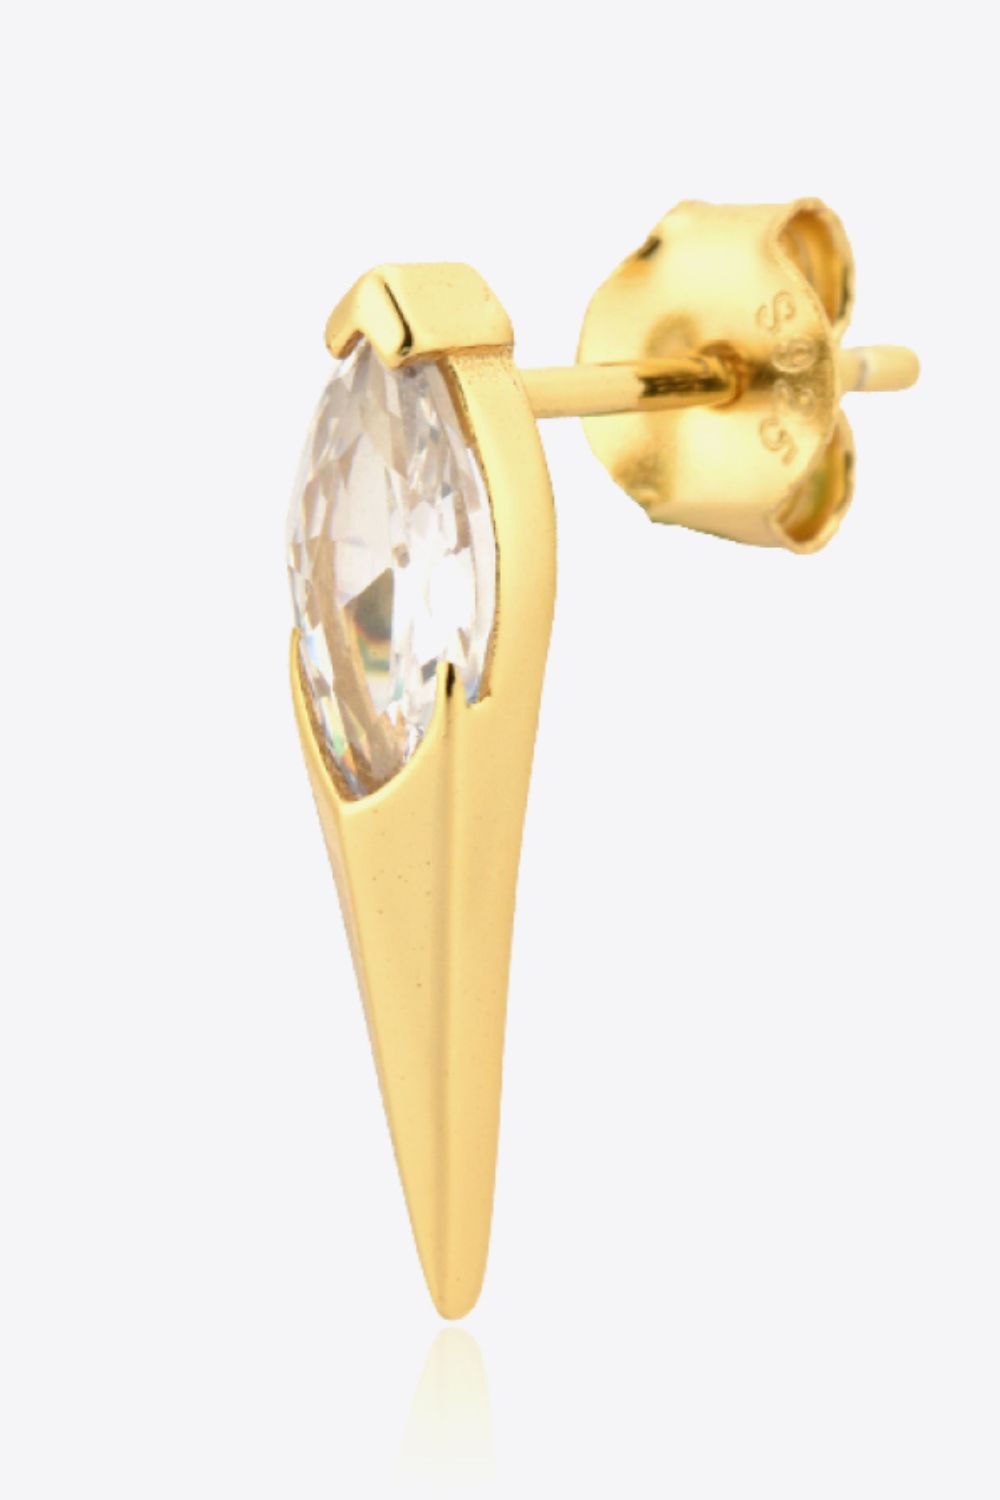 Studded Drop Gold Earrings